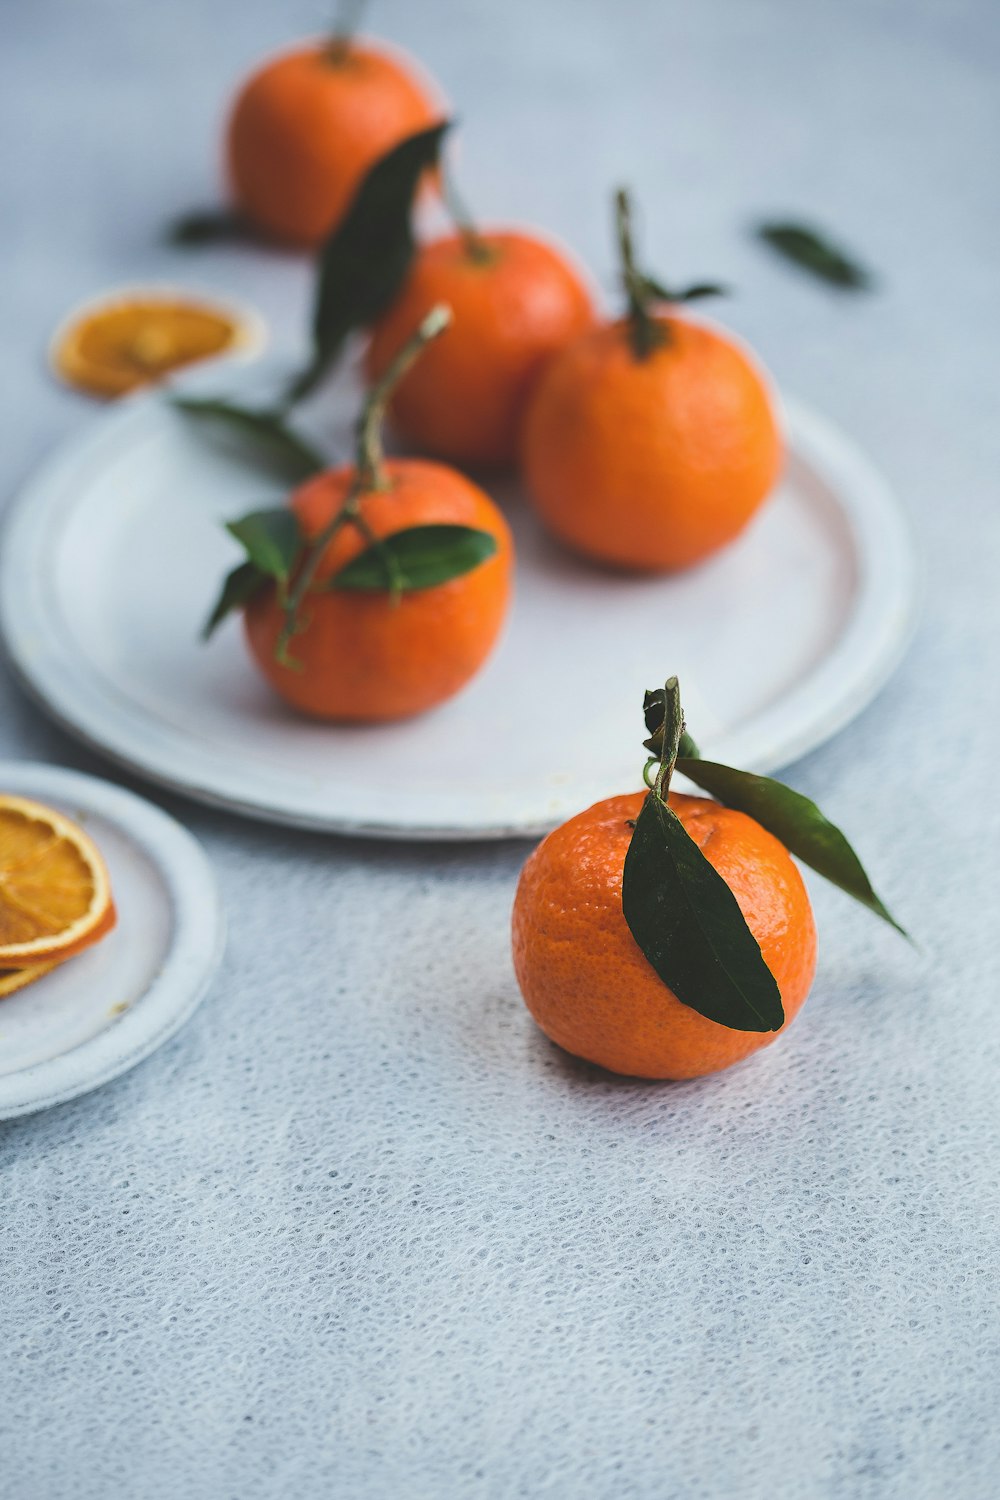 orange fruits on white plate